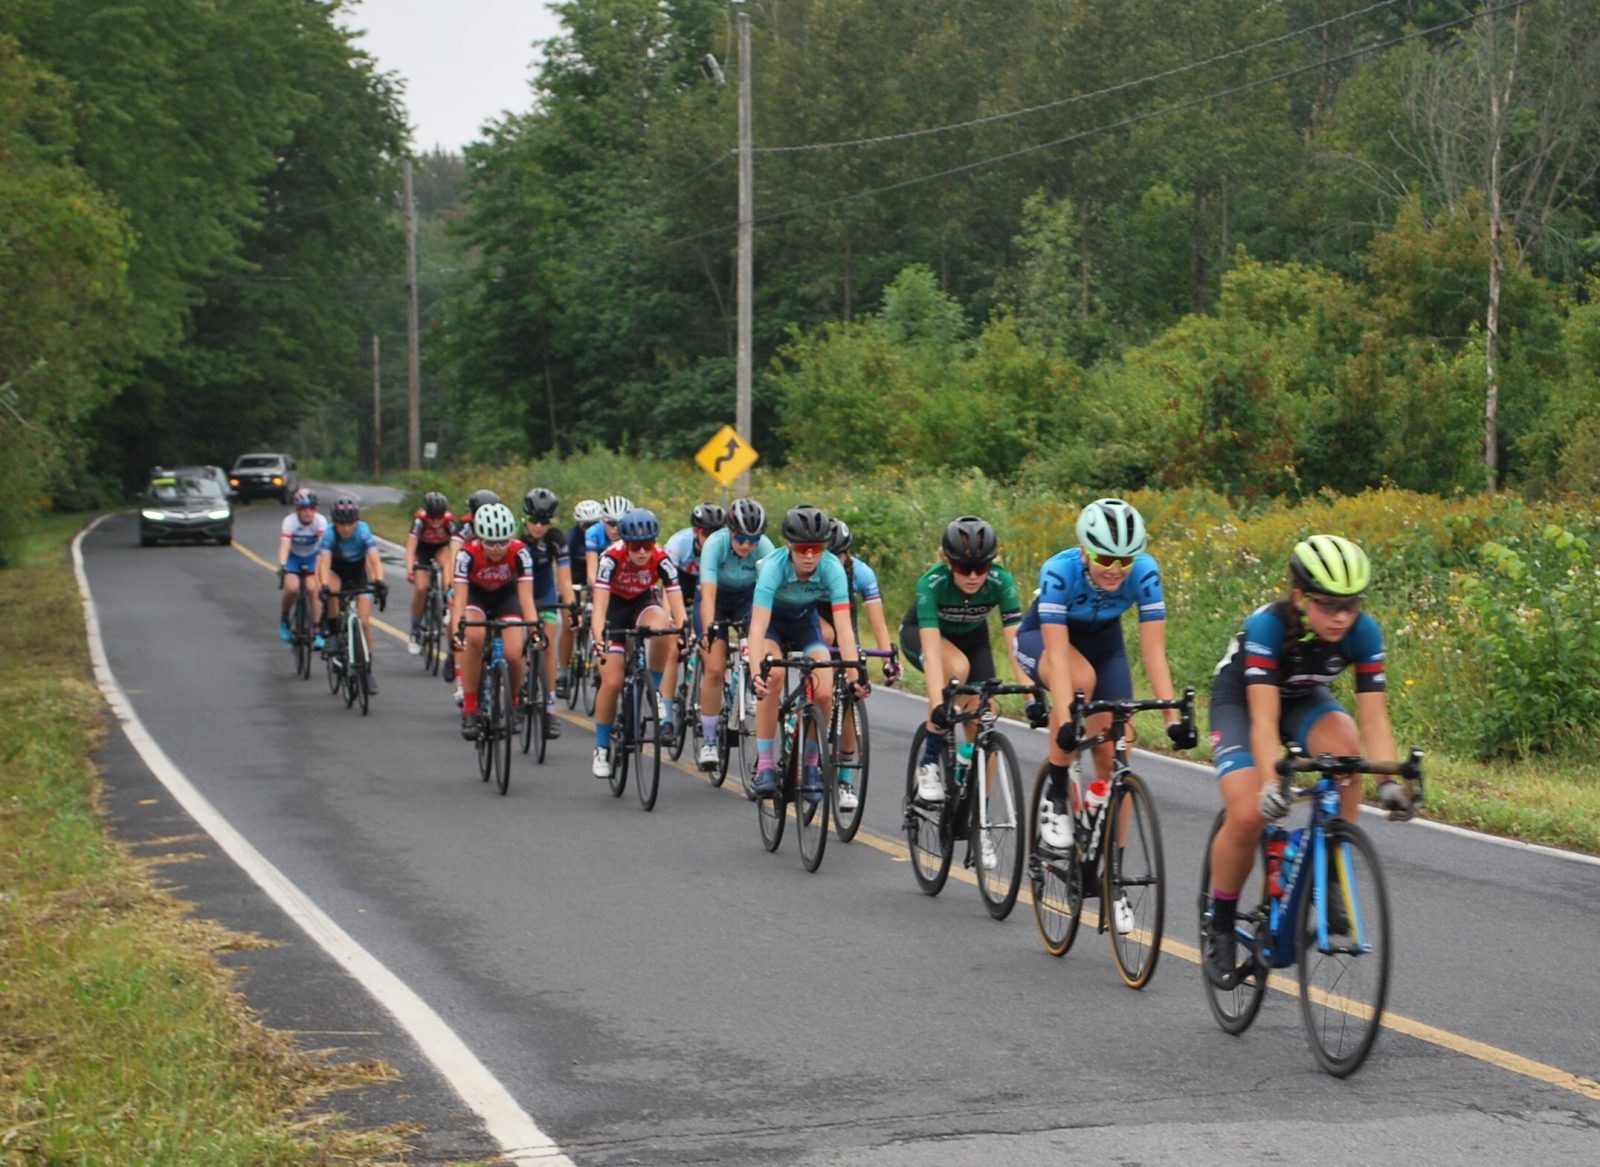 Championnats québécois de cyclisme sur route Espoir: Les clubs de la région s’illustrent